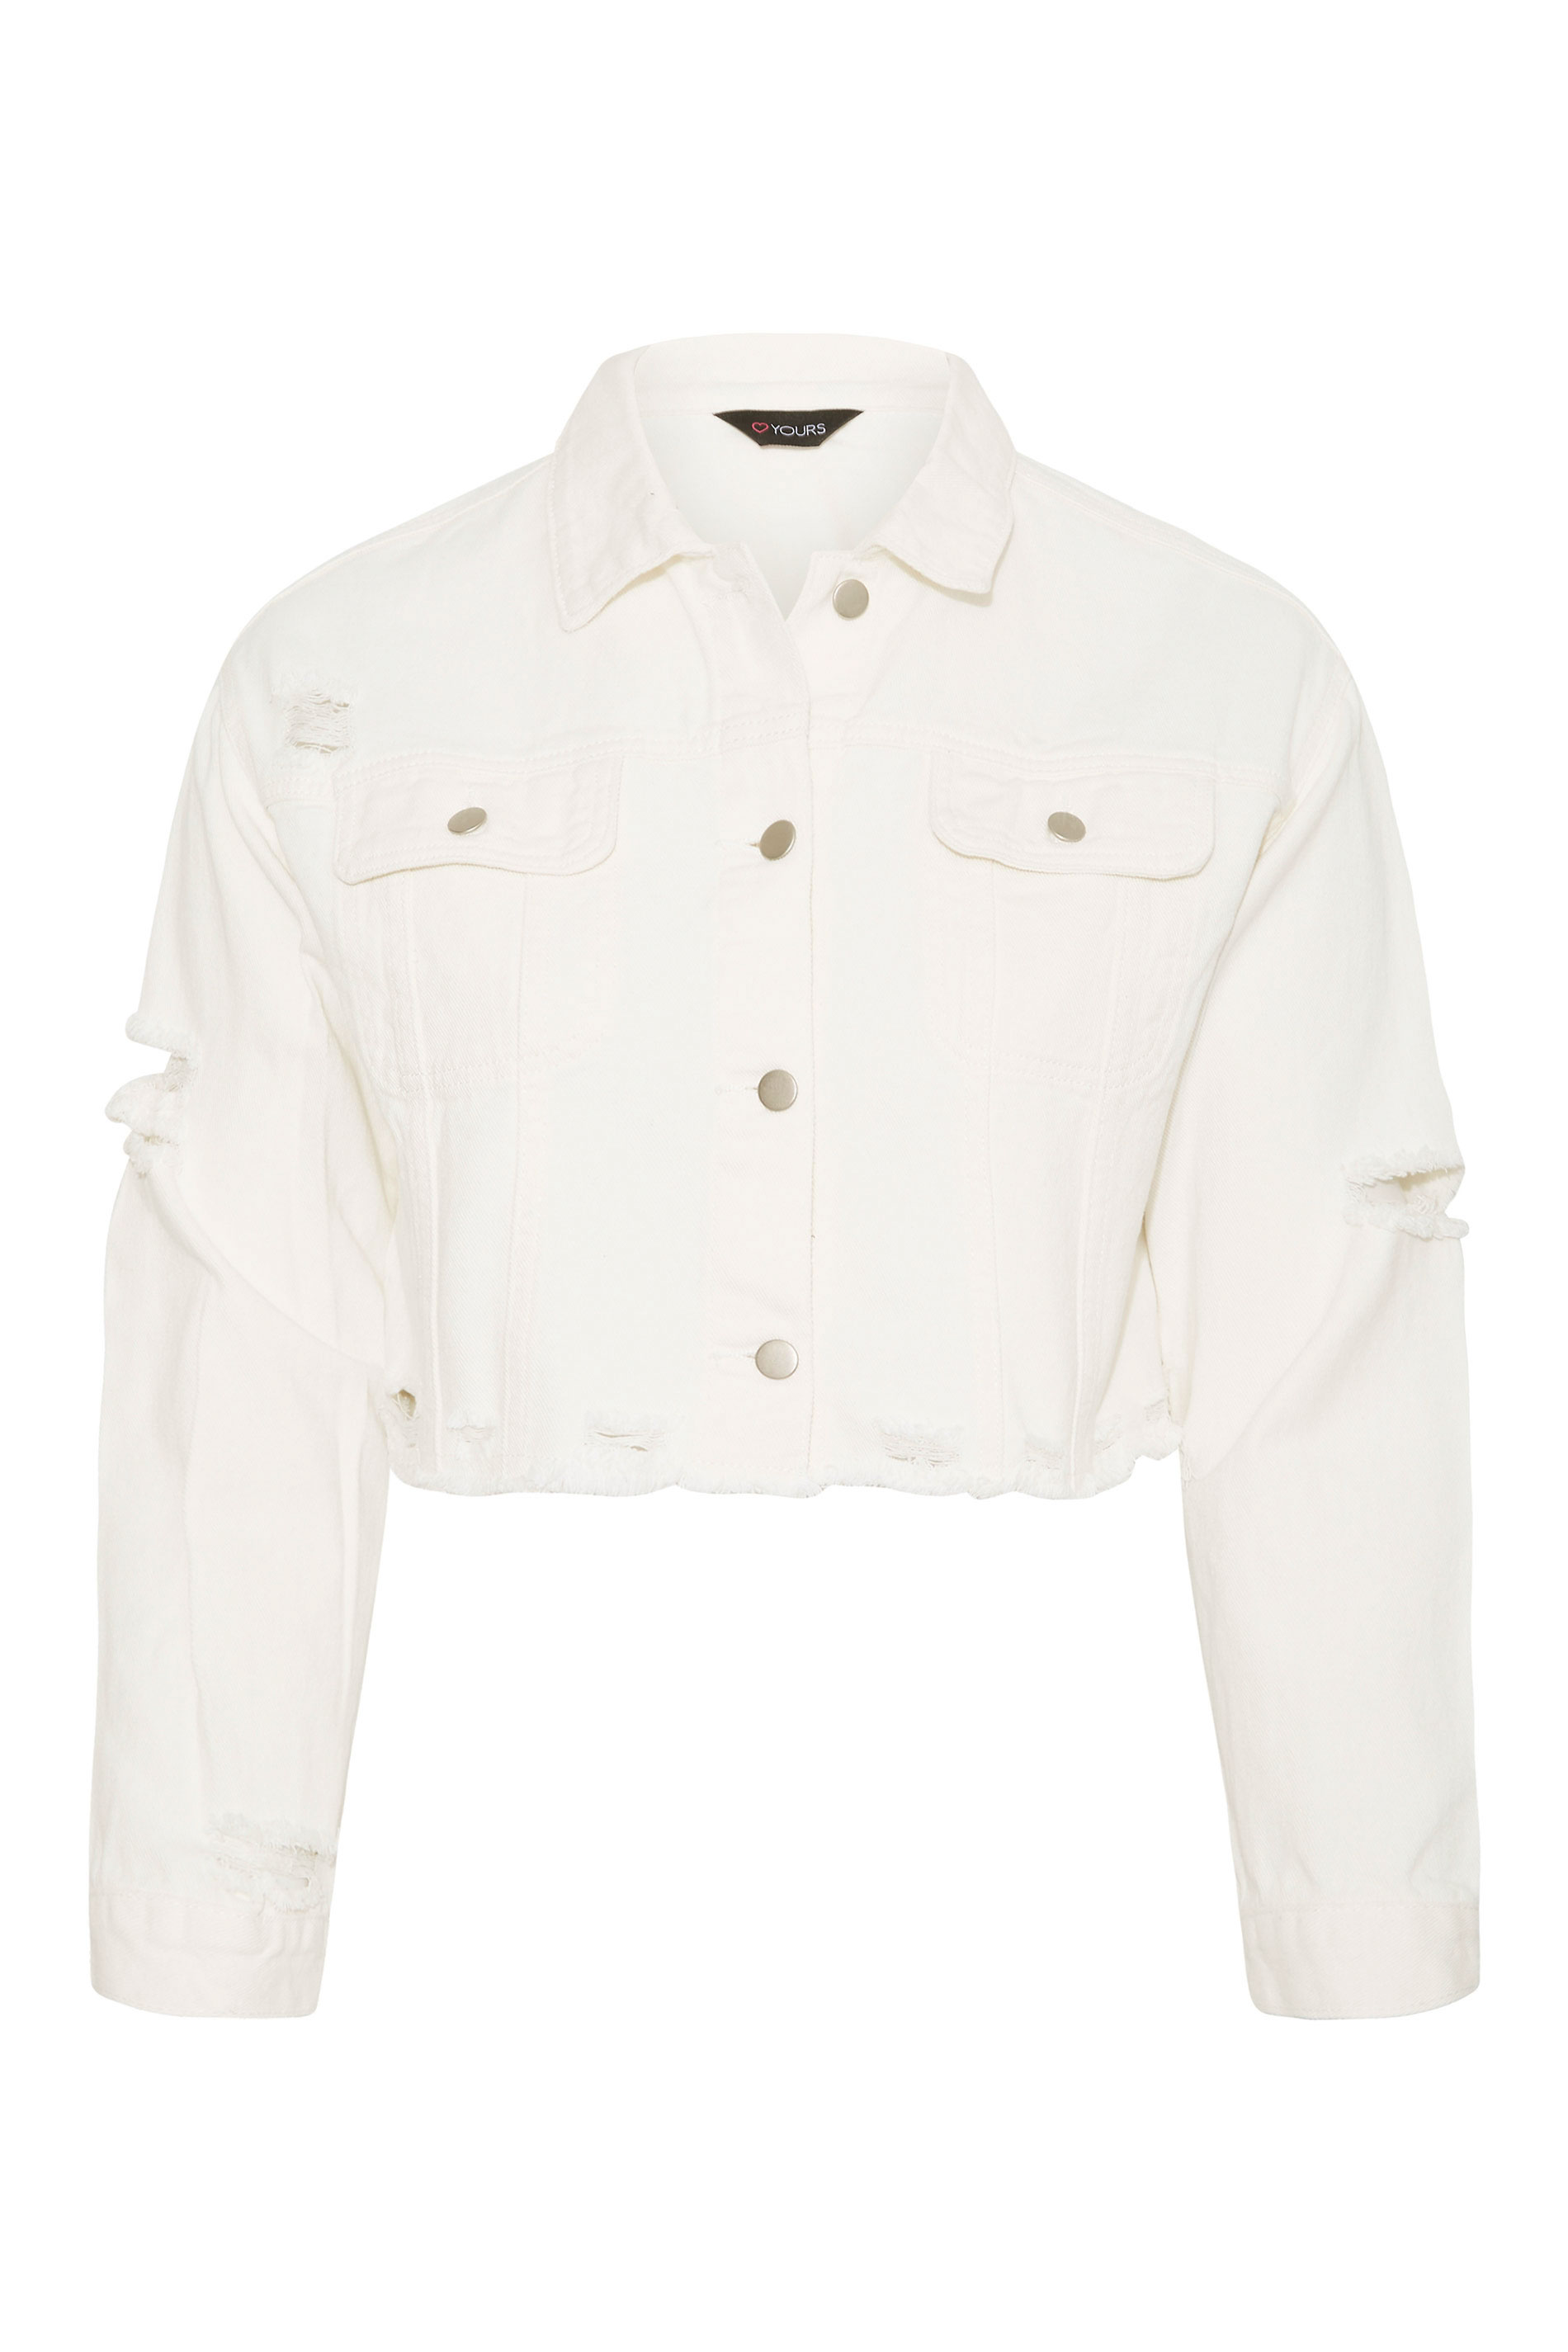 Jessica London Plus Size Peplum Denim Jacket Size 32W | eBay